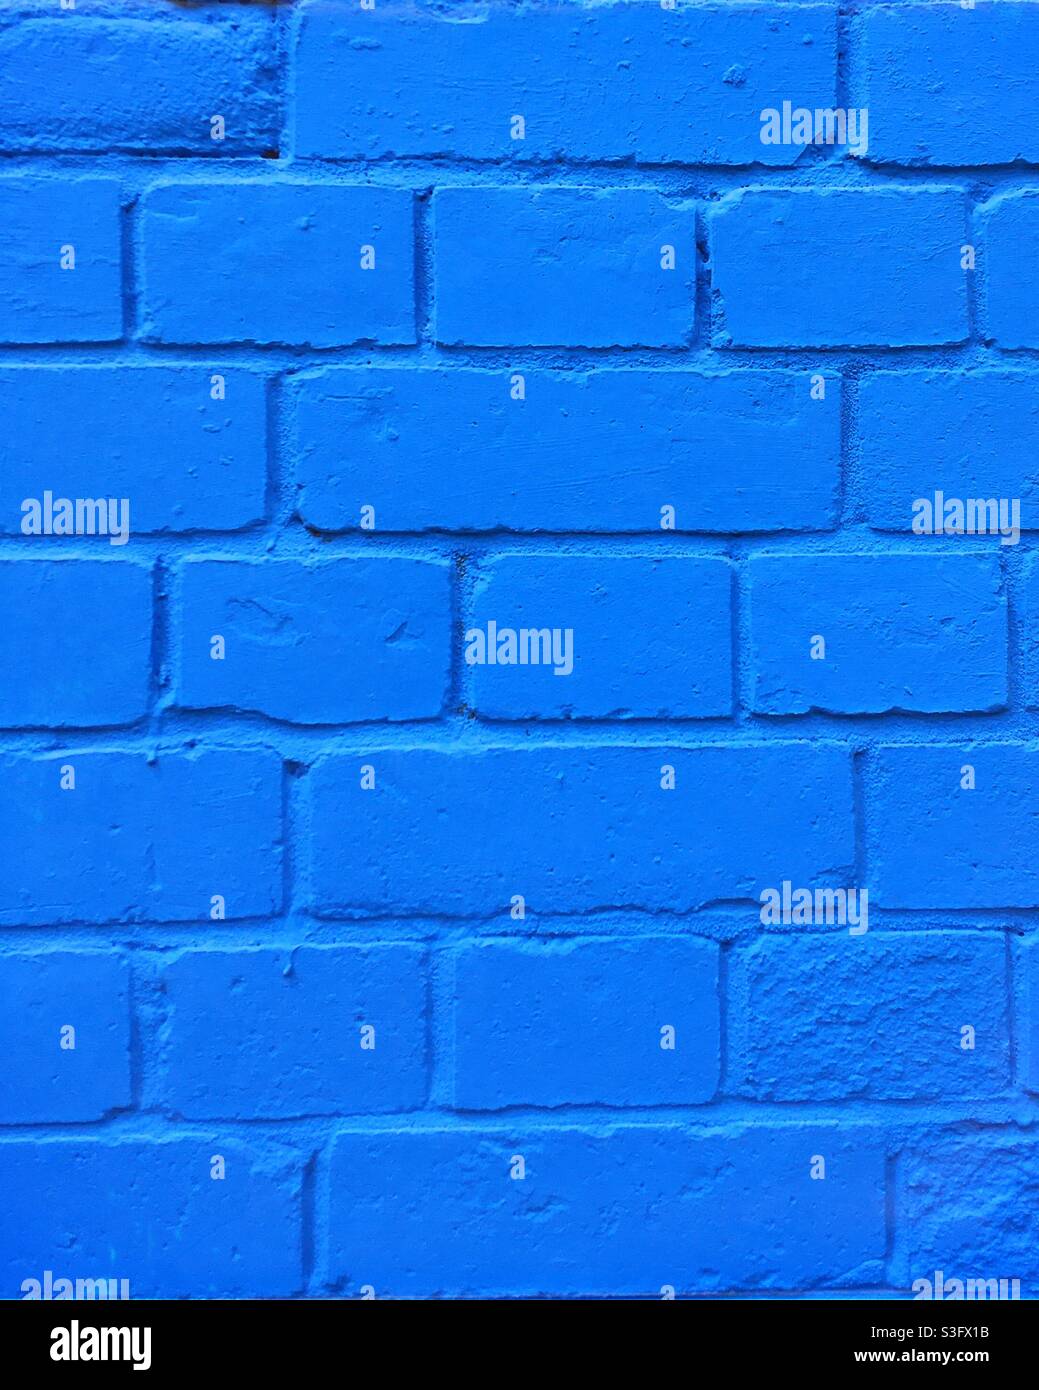 Immagine di sfondo di muratura dipinta in mattoni di colore blu medio Foto Stock